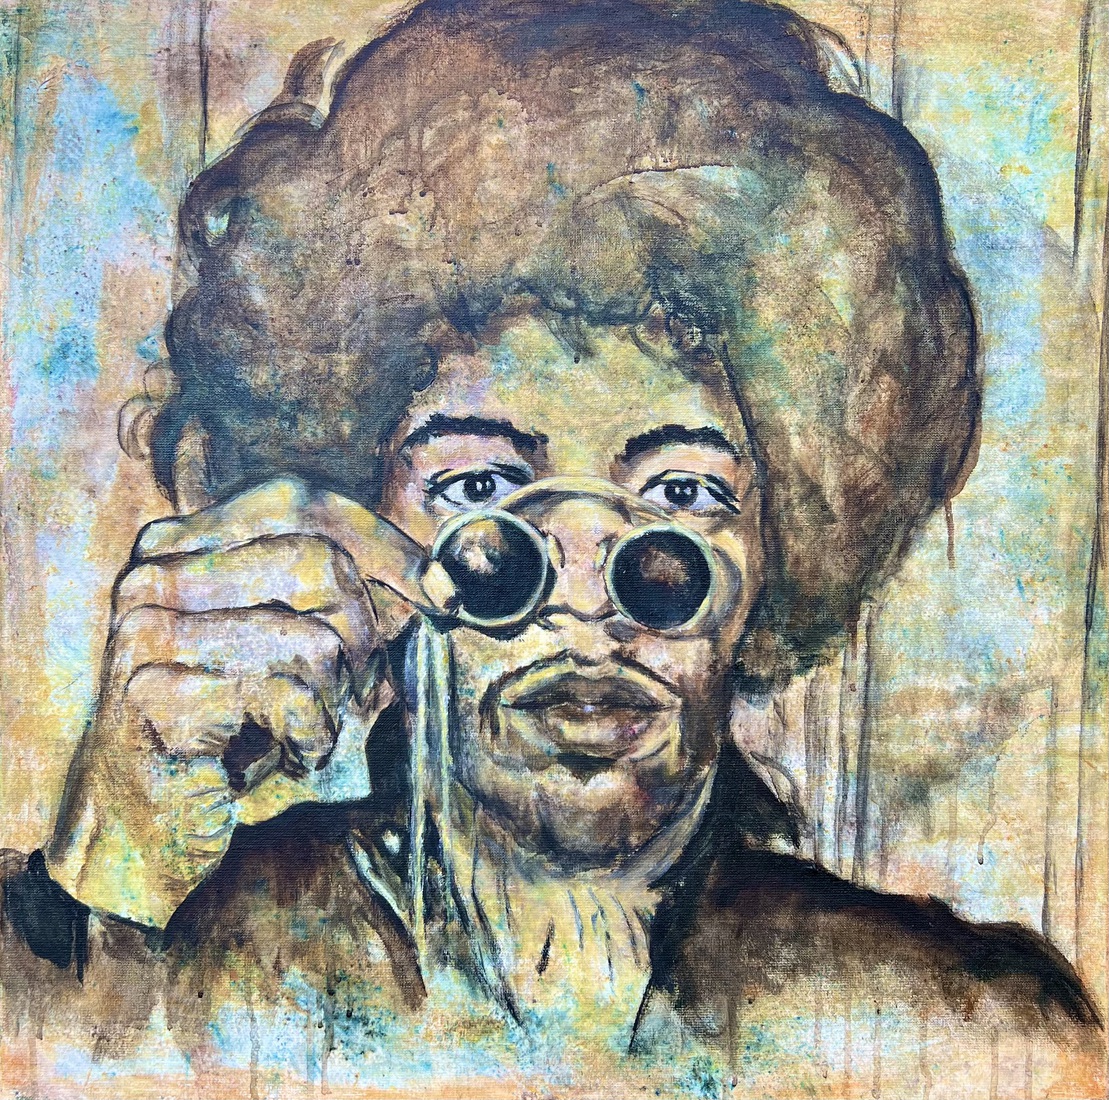 Jimi Hendrix with sunglasses